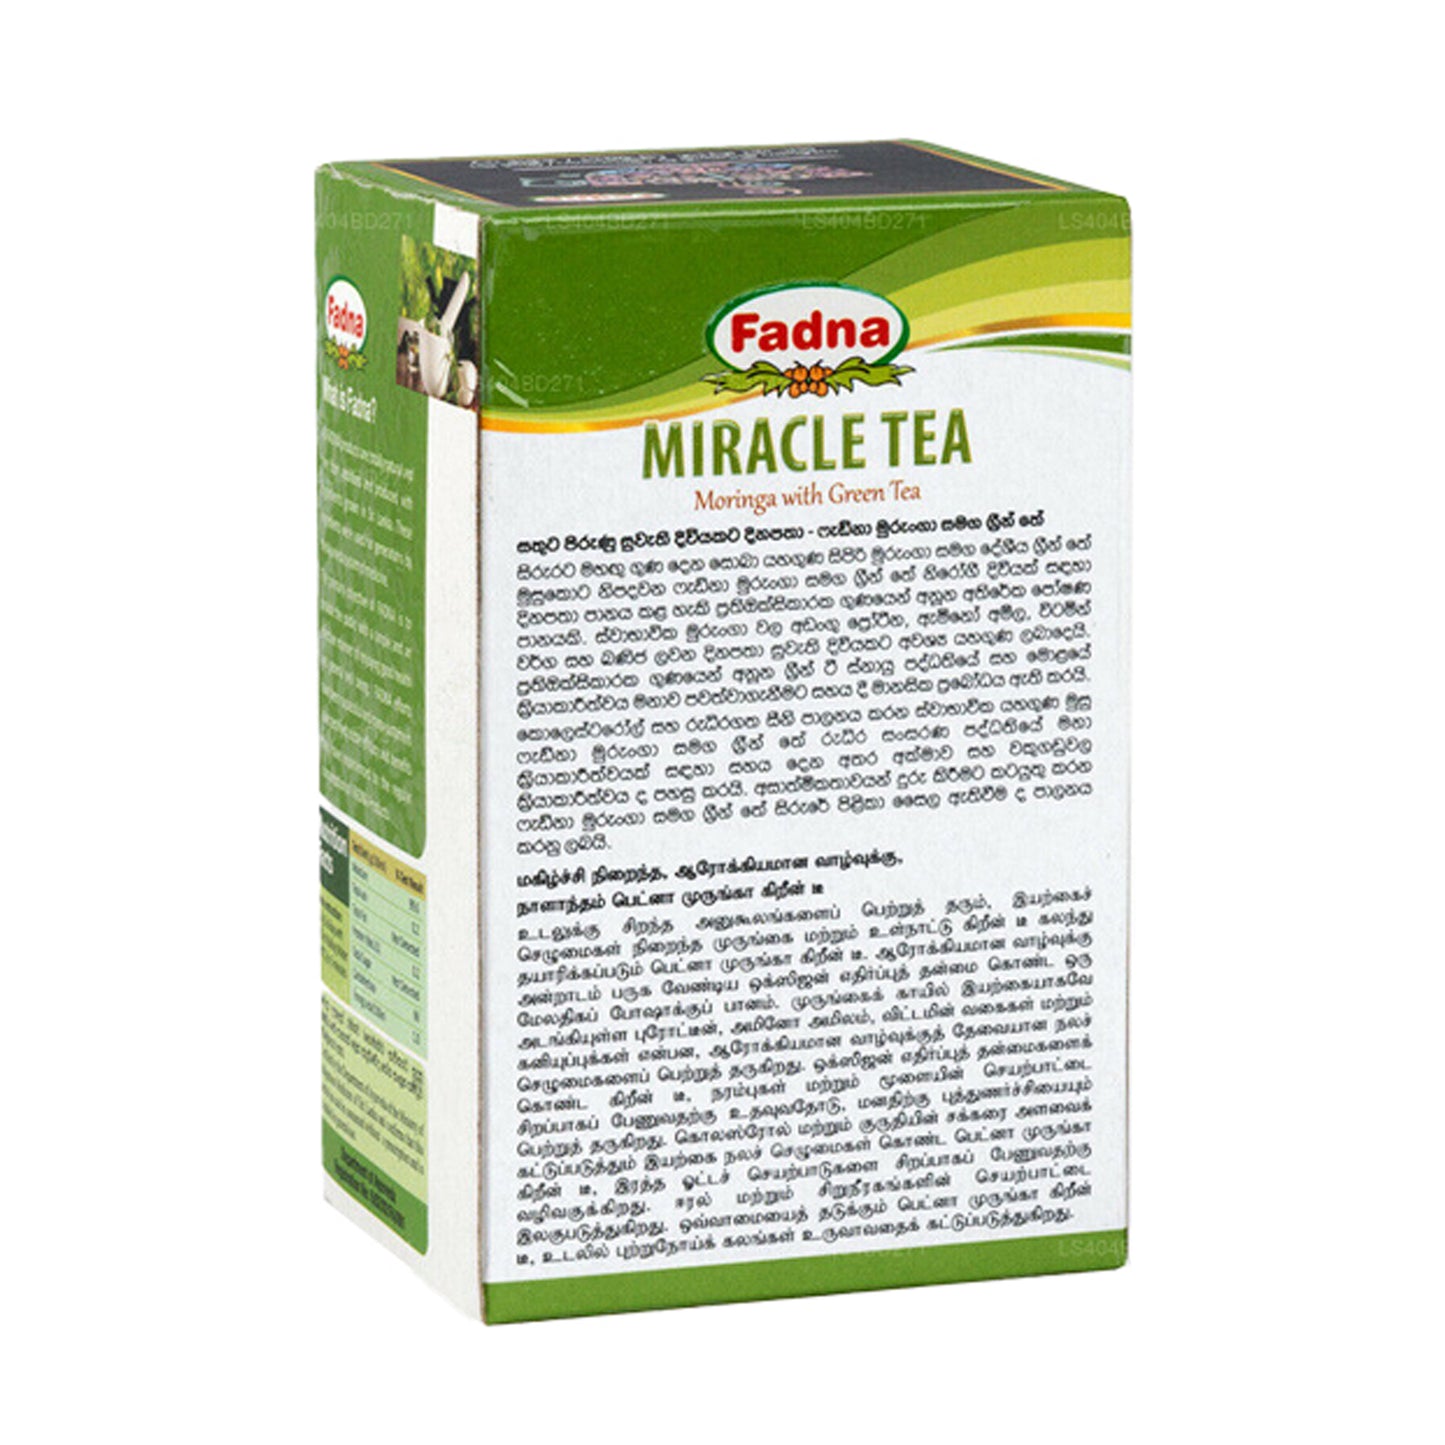 شاي فادنا ميراكل المورينجا مع الشاي الأخضر (40 جم) 20 كيس شاي